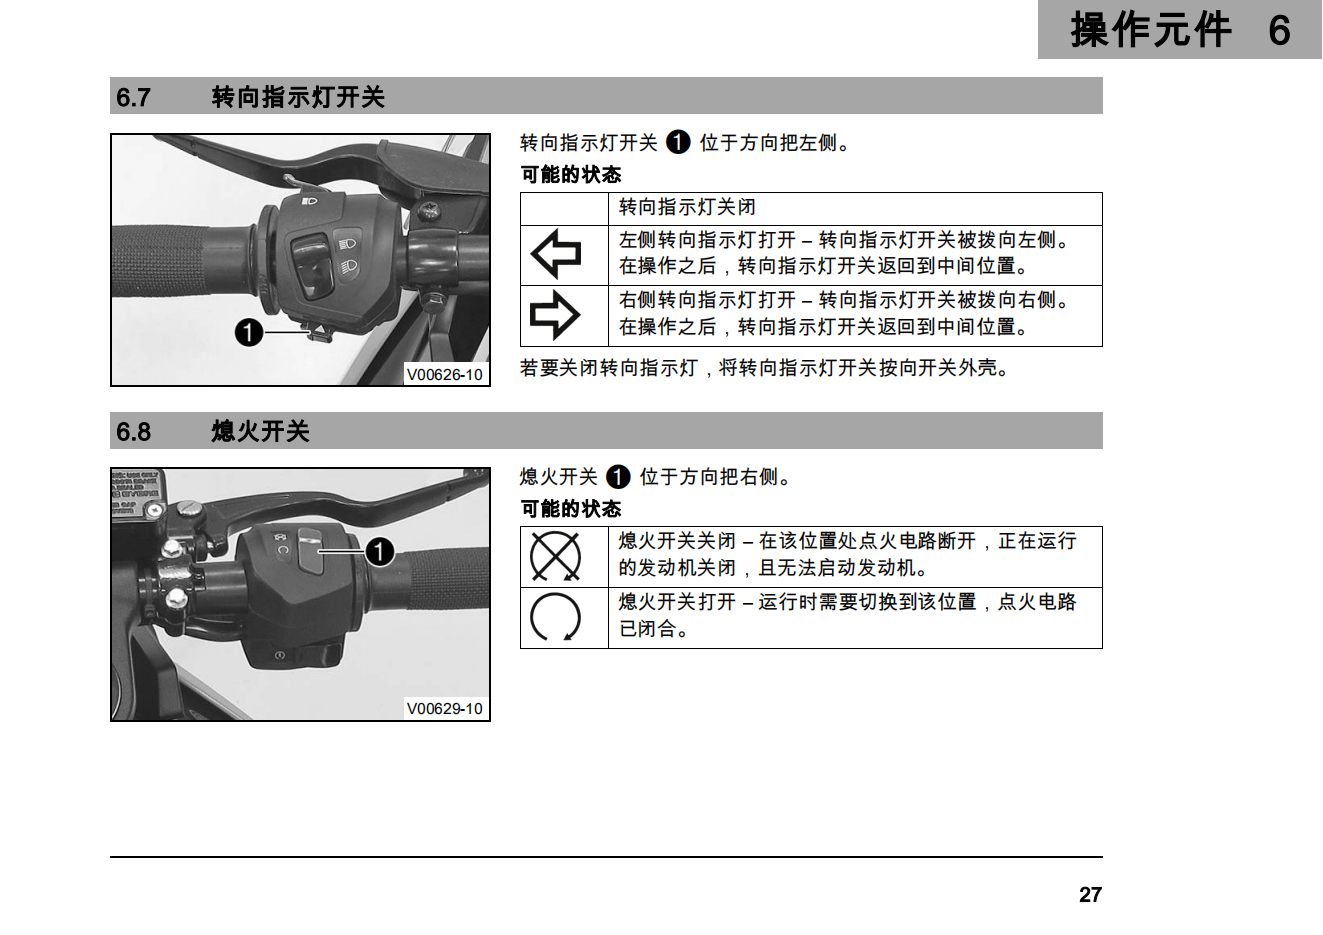 简体中文2019年 ktm rc125用户手册插图2